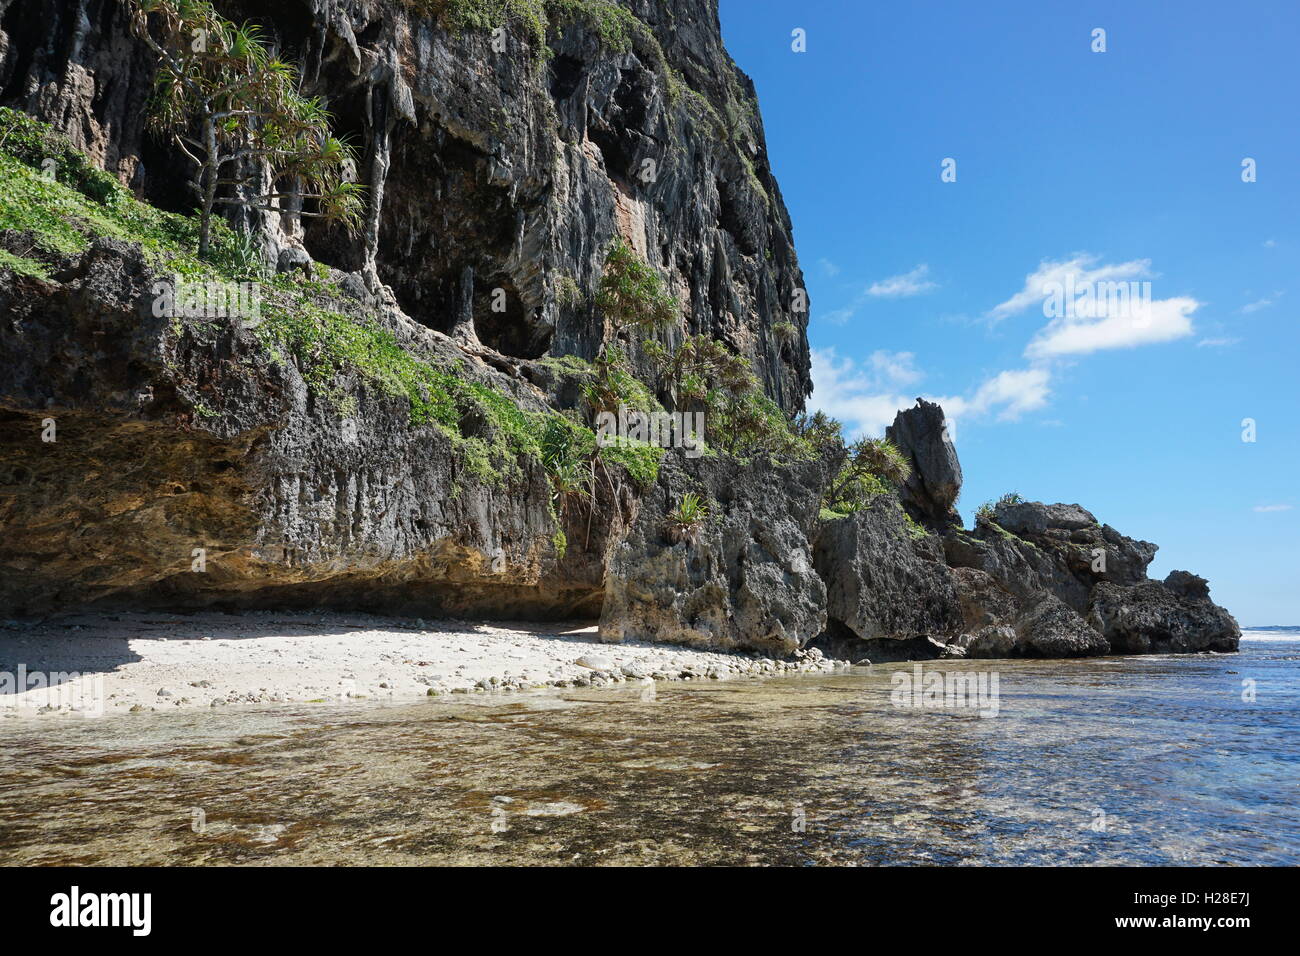 Falaise calcaire érodé avec cave sur la rive de l'île de Rurutu, l'océan Pacifique, l'archipel des Australes, Polynésie Française Banque D'Images